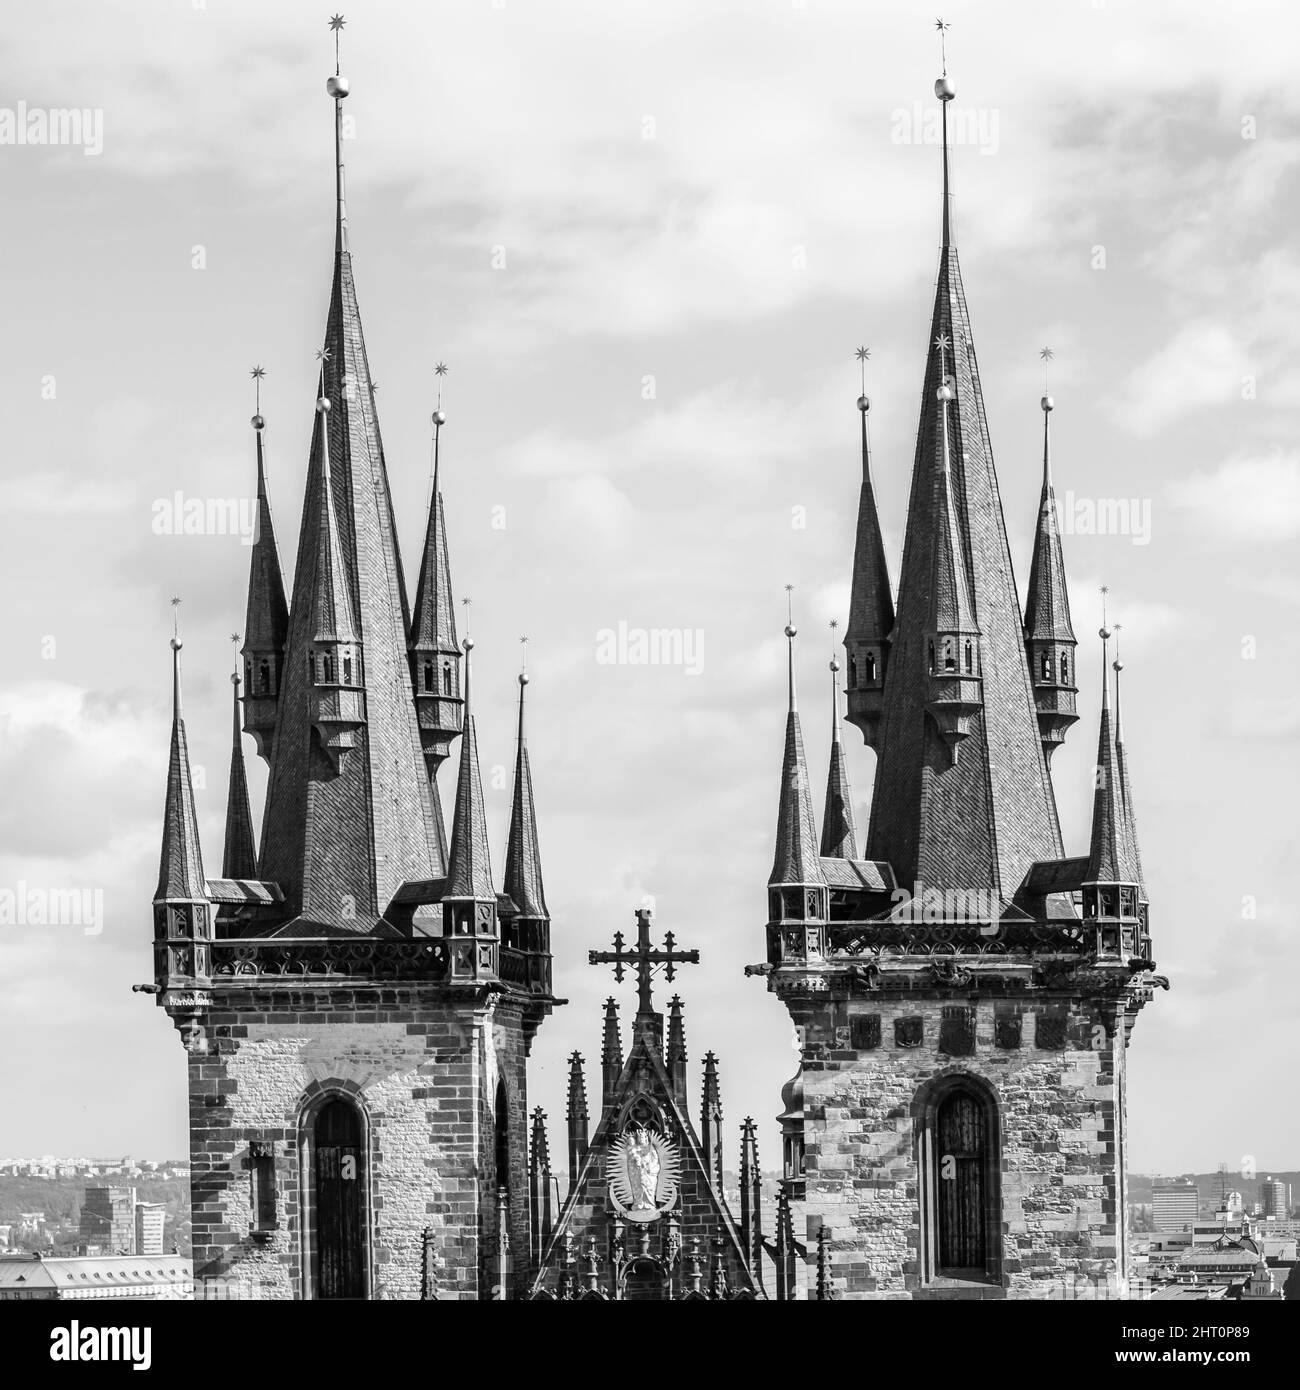 Gotische Türme der Tyn-Kirche in Prag, Tschechien. Schwarzweiß-Fotografie, architektonische Details Stockfoto